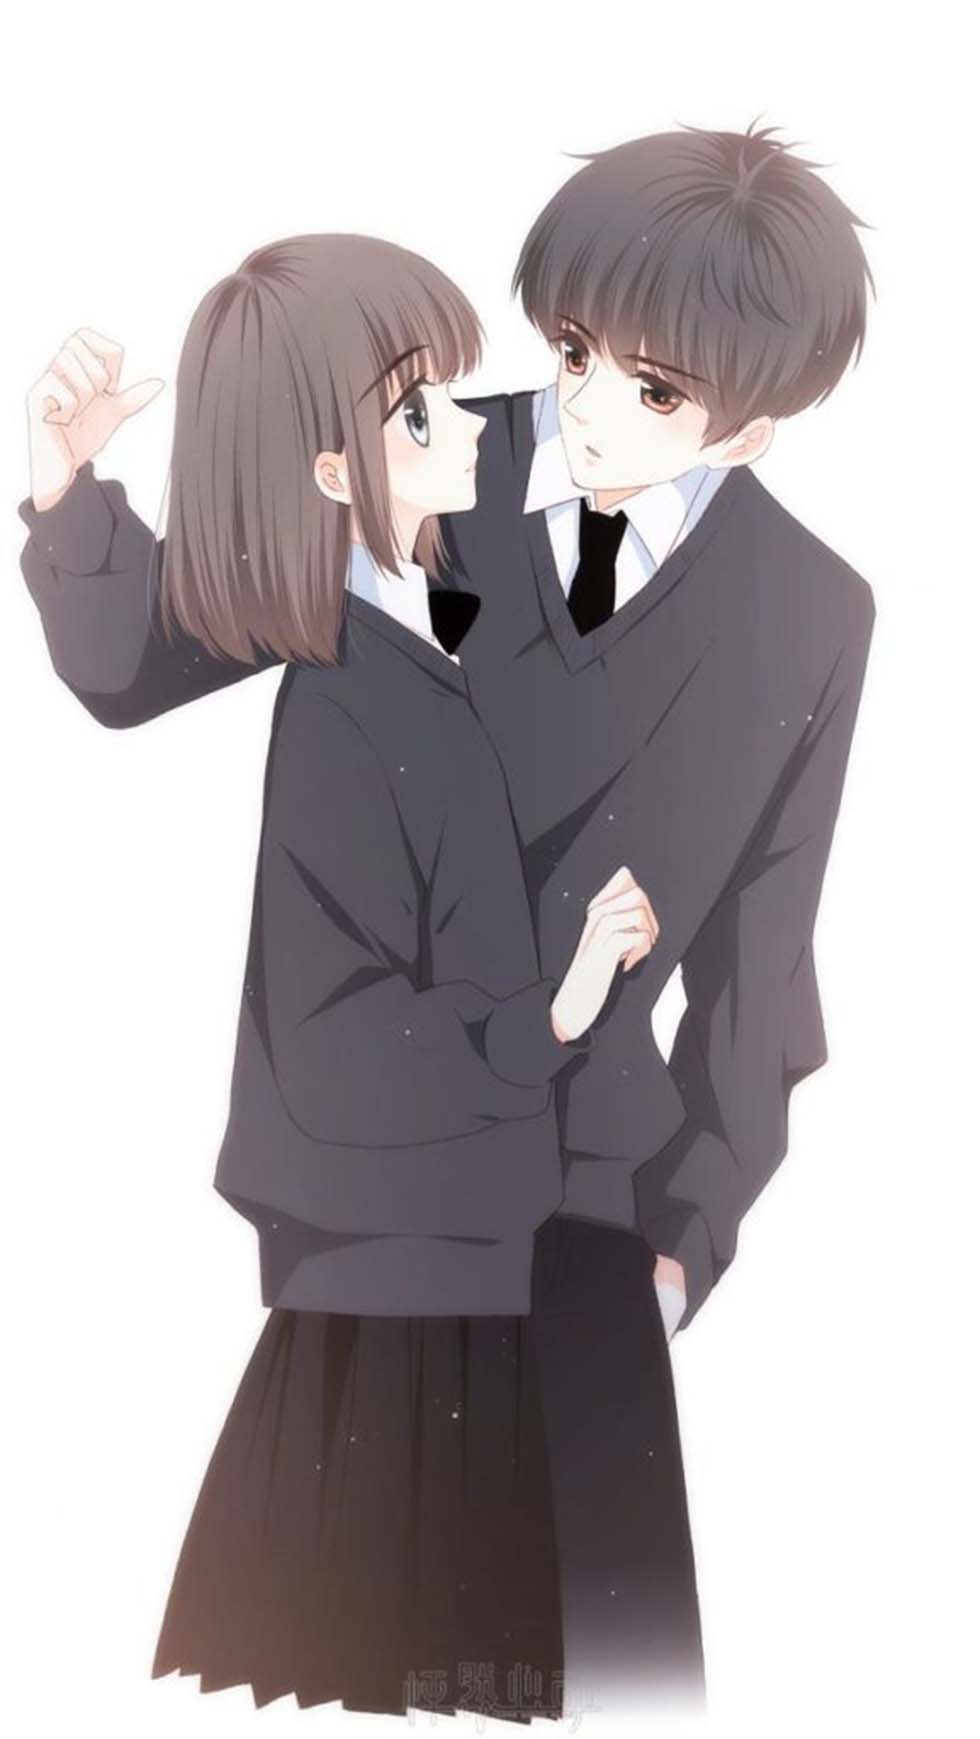 Hình ảnh anime cặp đôi yêu nhau dễ thương